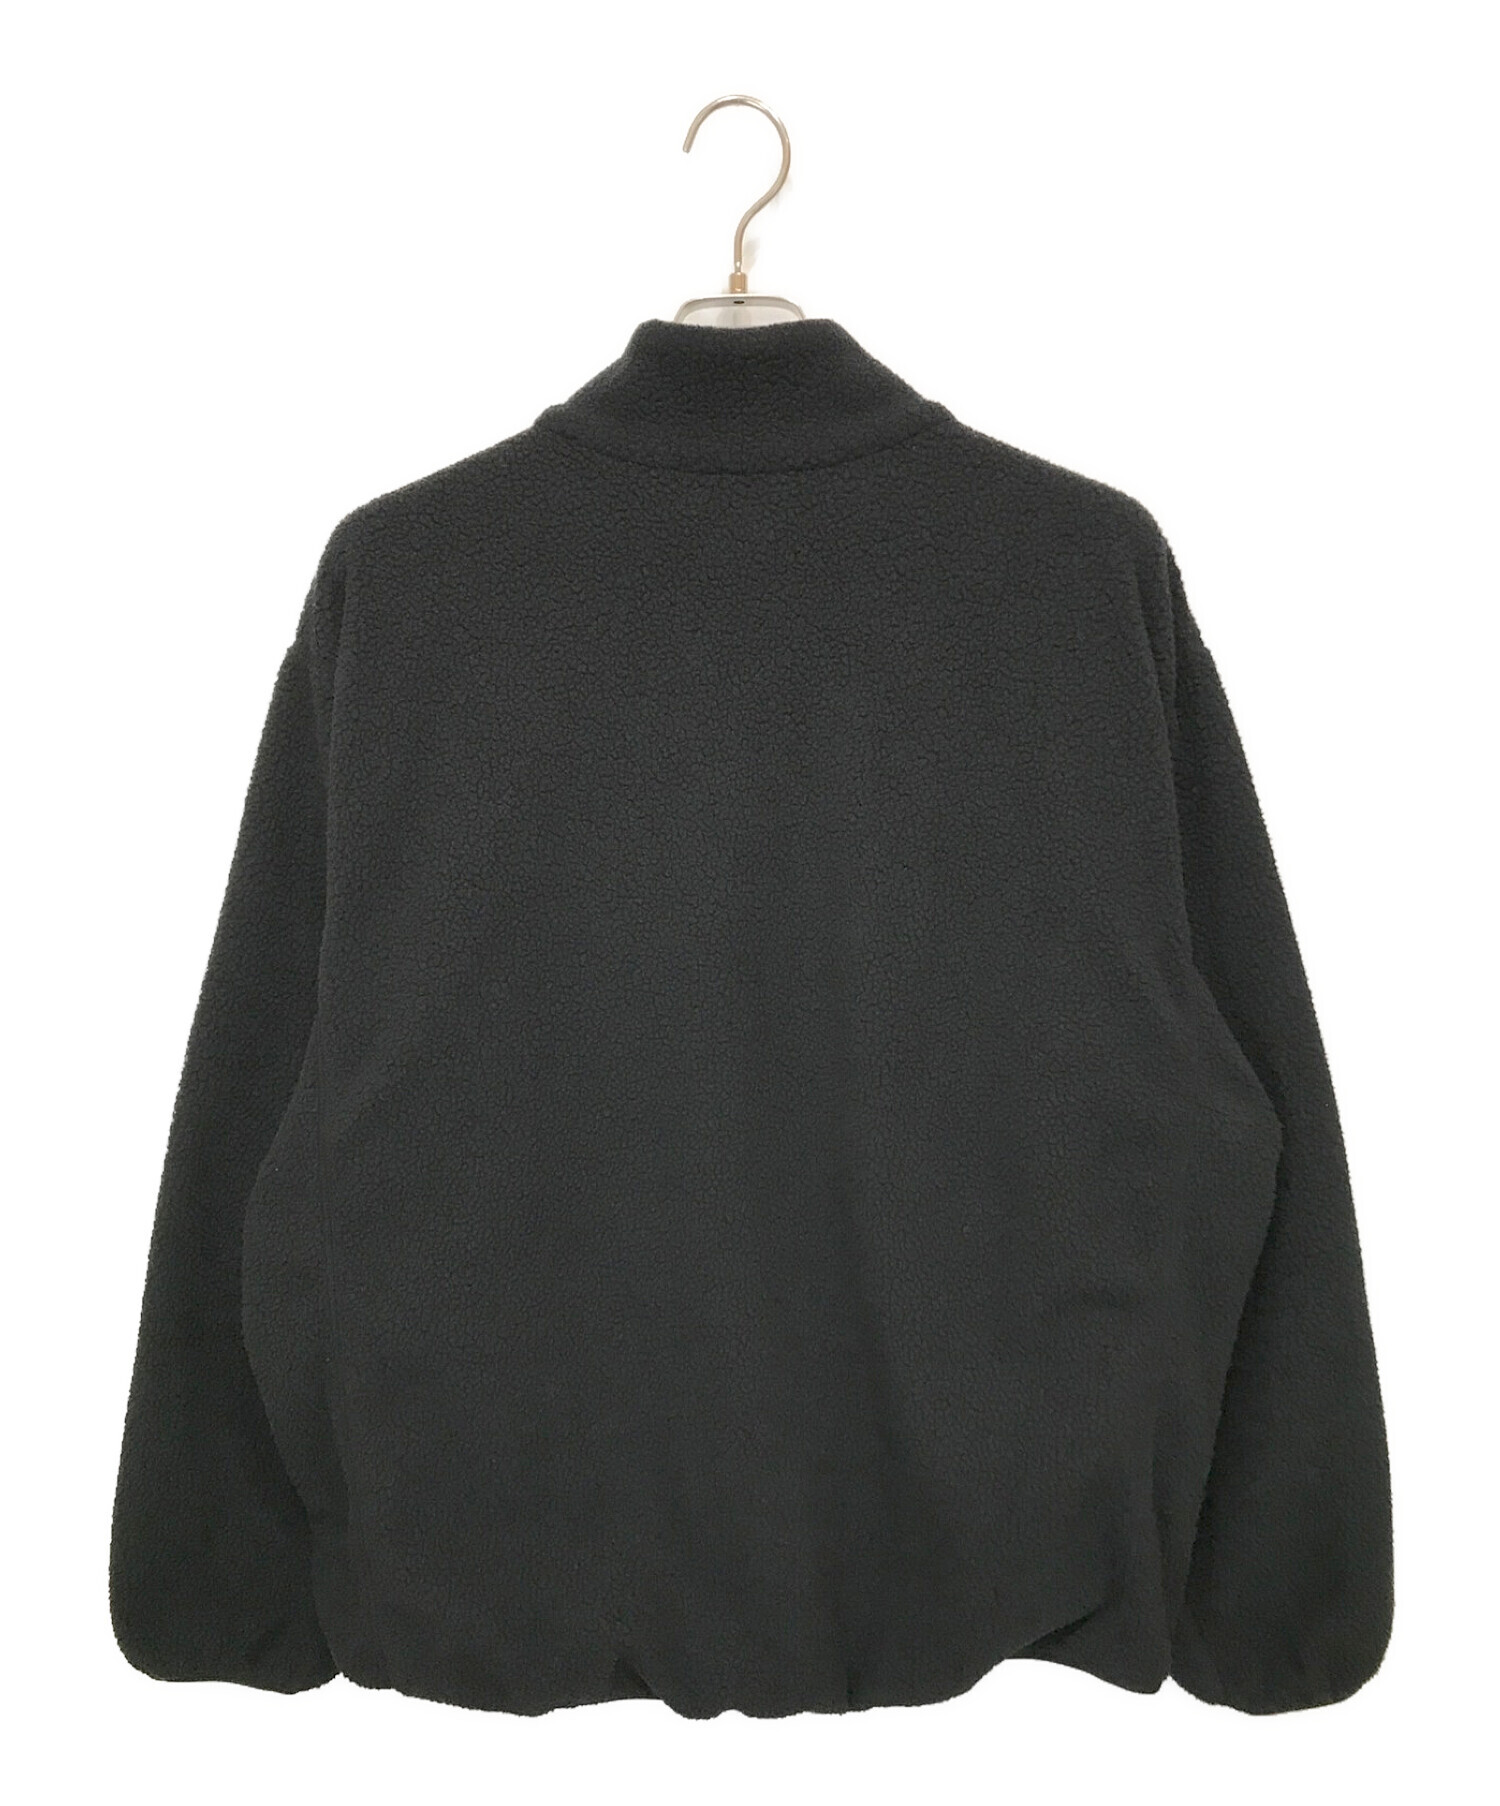 ENNOY (エンノイ) フリースジャケット ブラック サイズ:L